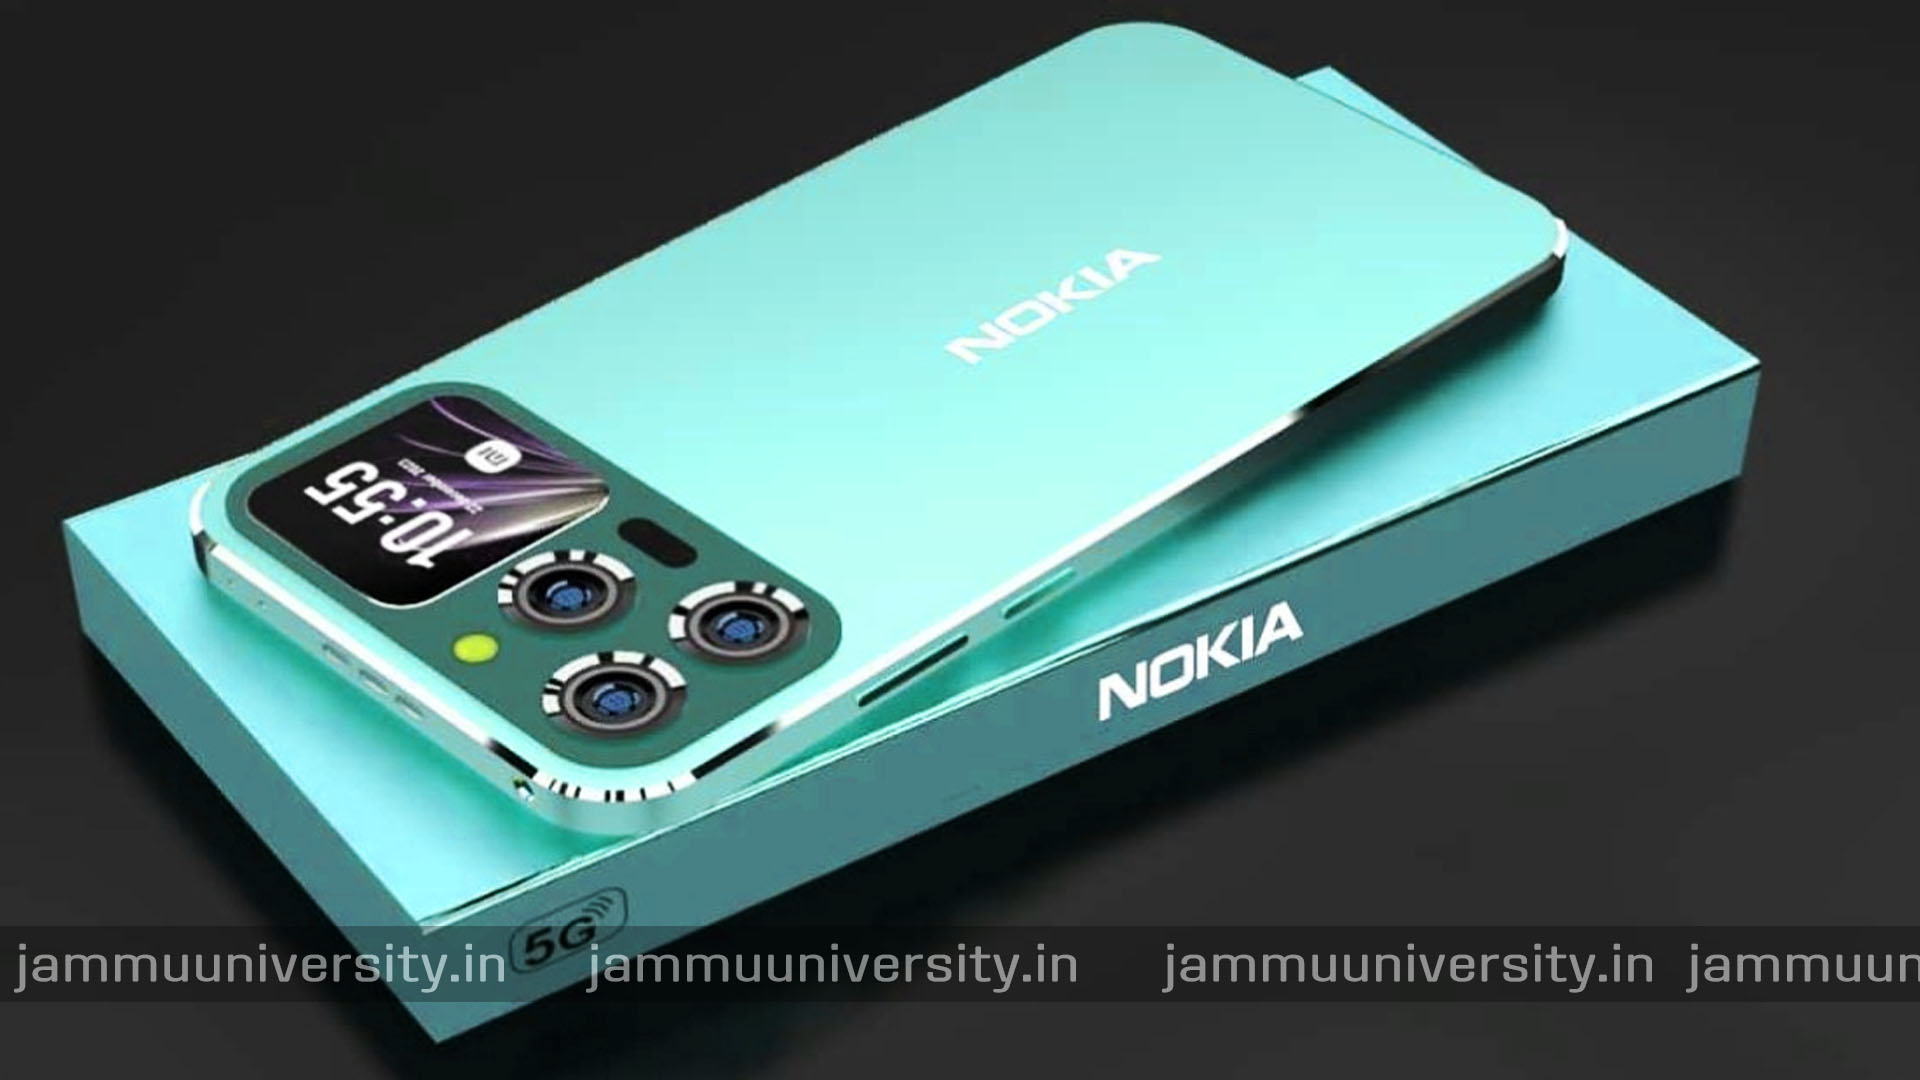 Nokia 6600 Mini Neo